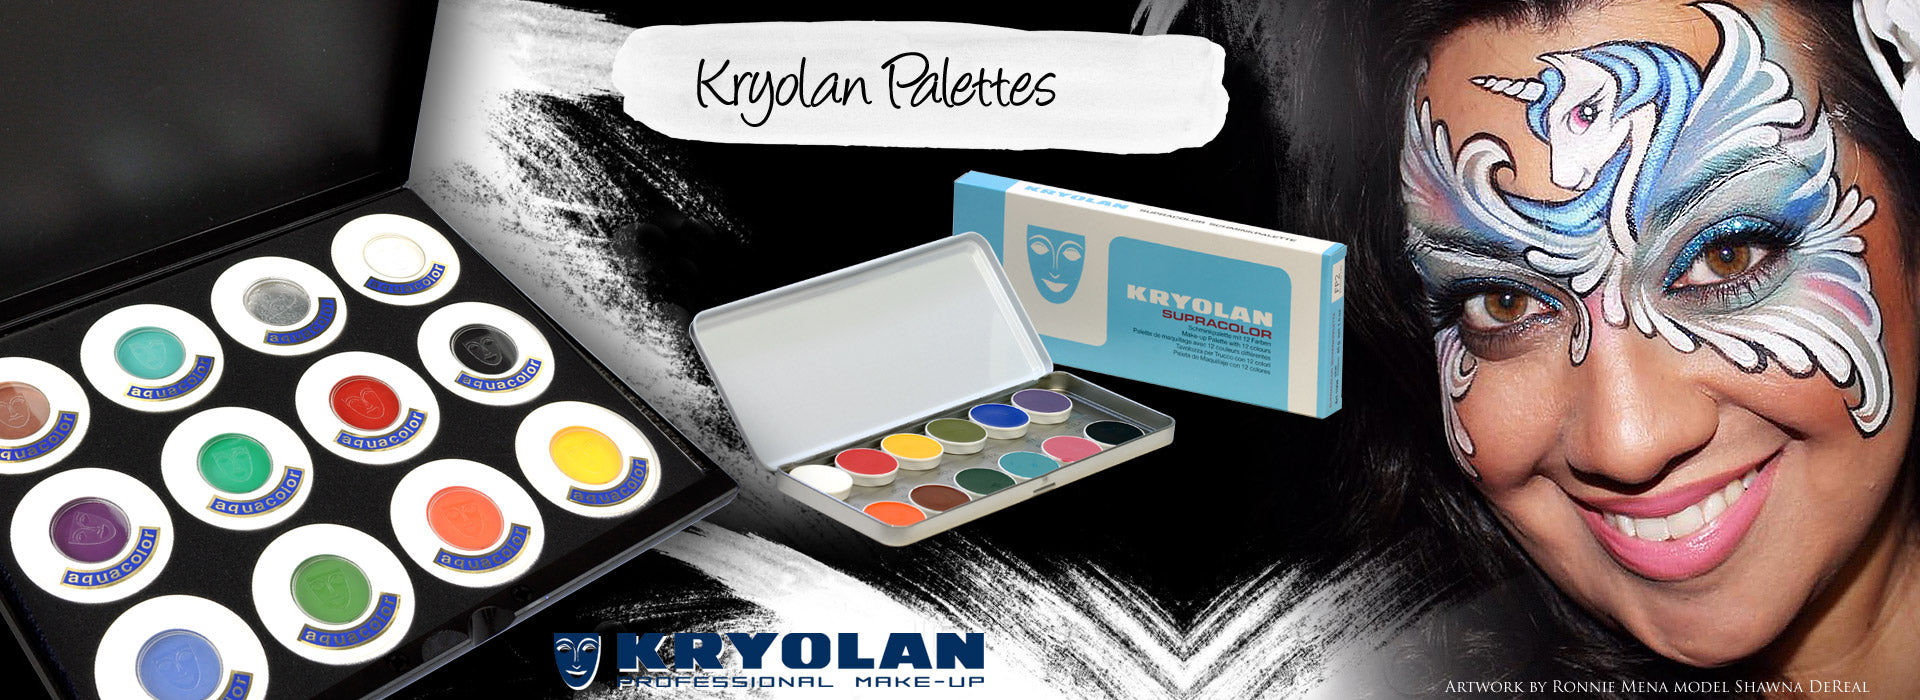 Kryolan Aquacolor UV-Dayglow 6-Color Palette, UV Reactive Black Light  Makeup